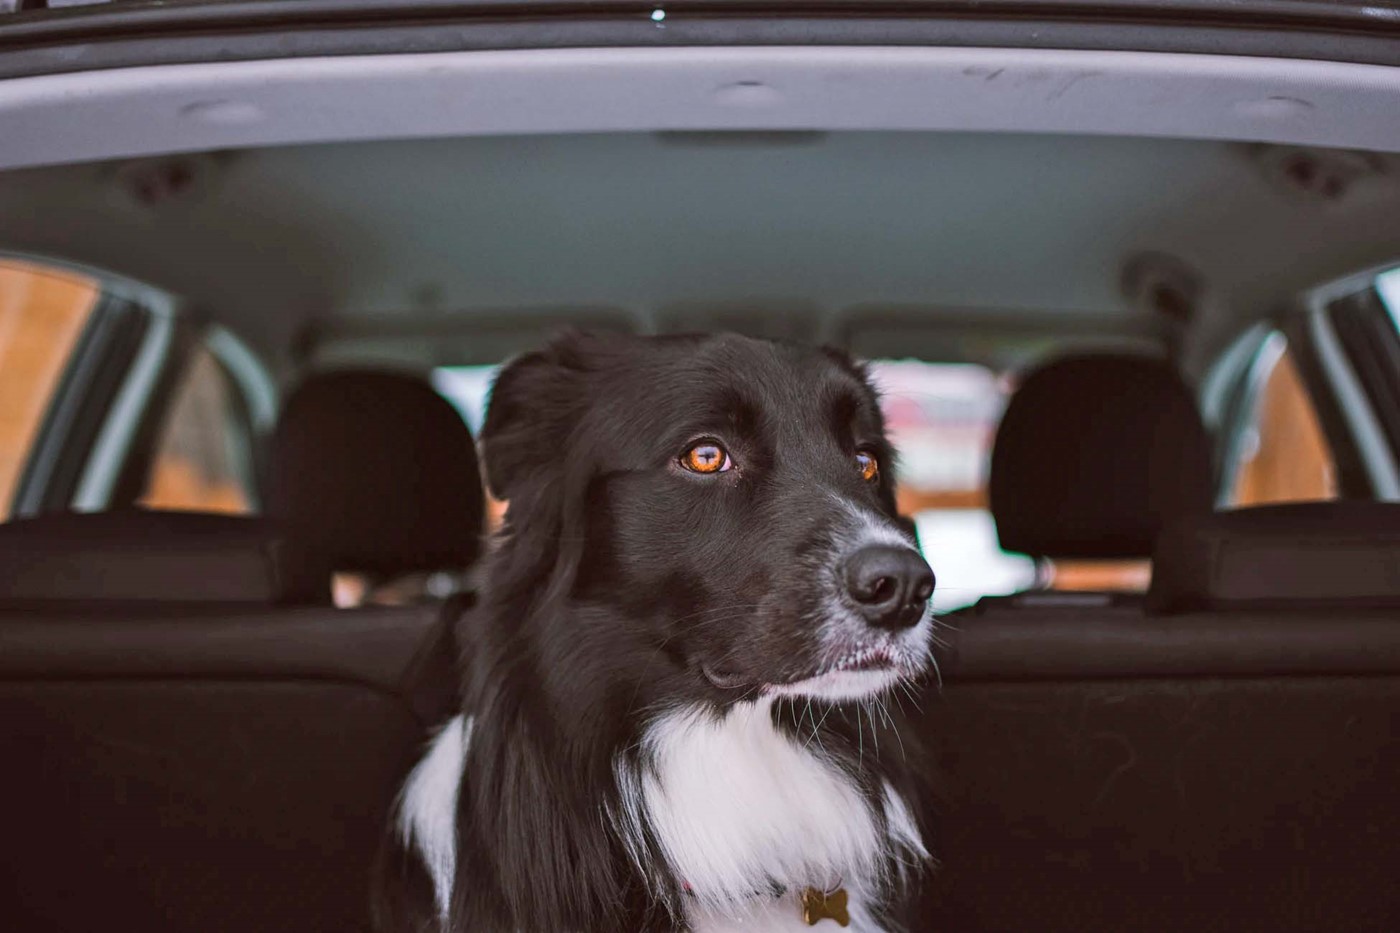 Necklet For pokker spontan Hund i bilen - Hvad siger loven? | Loppetjansen